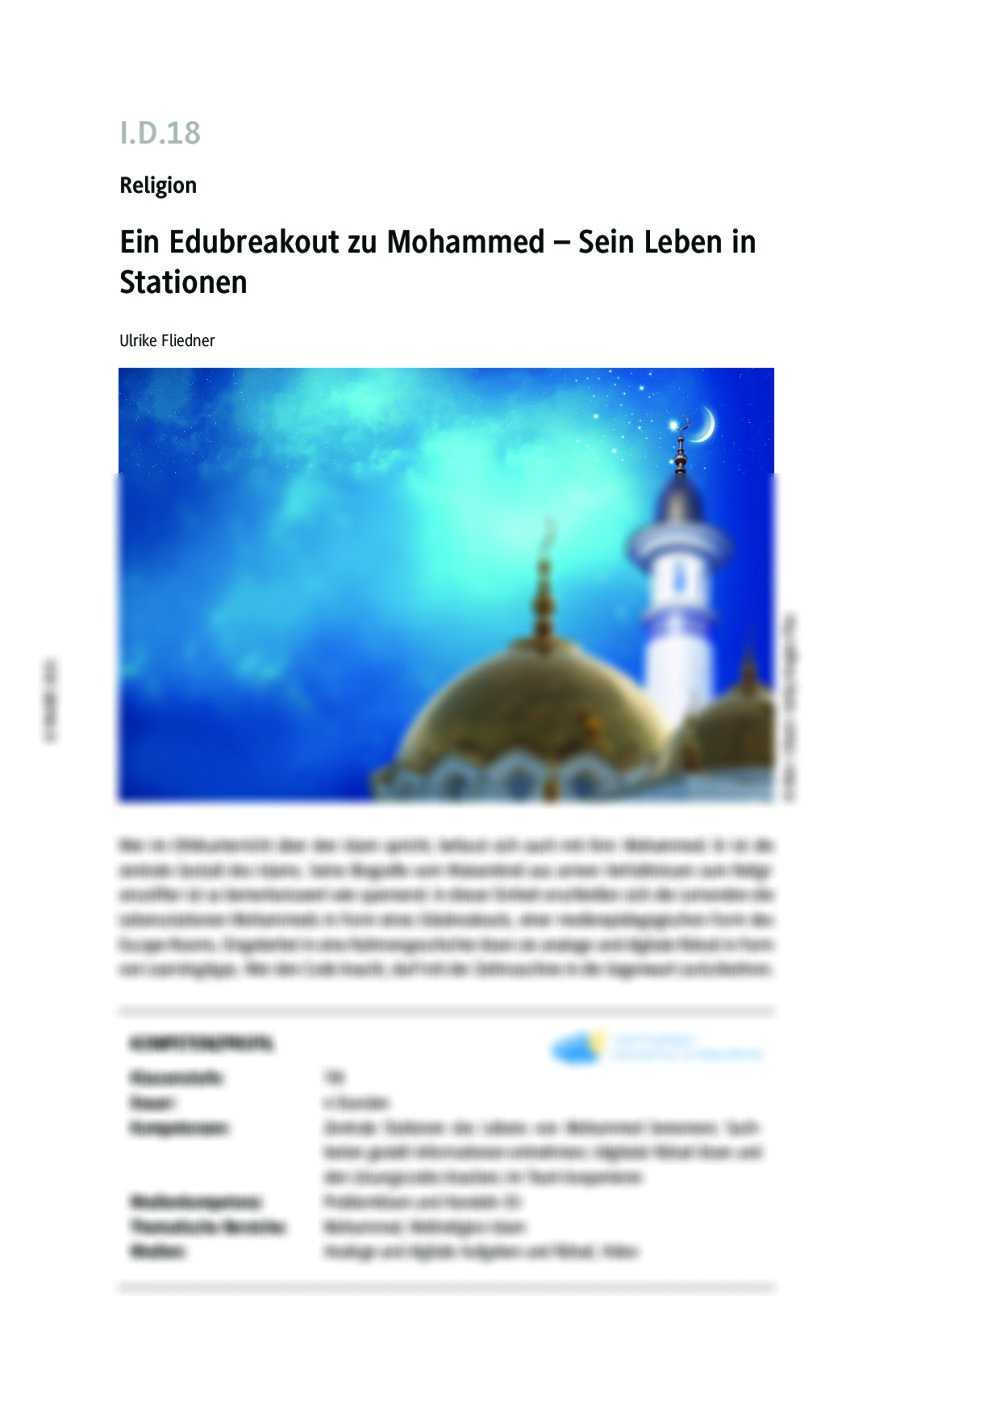 Ein Edubreakout zu Mohammed - Seite 1